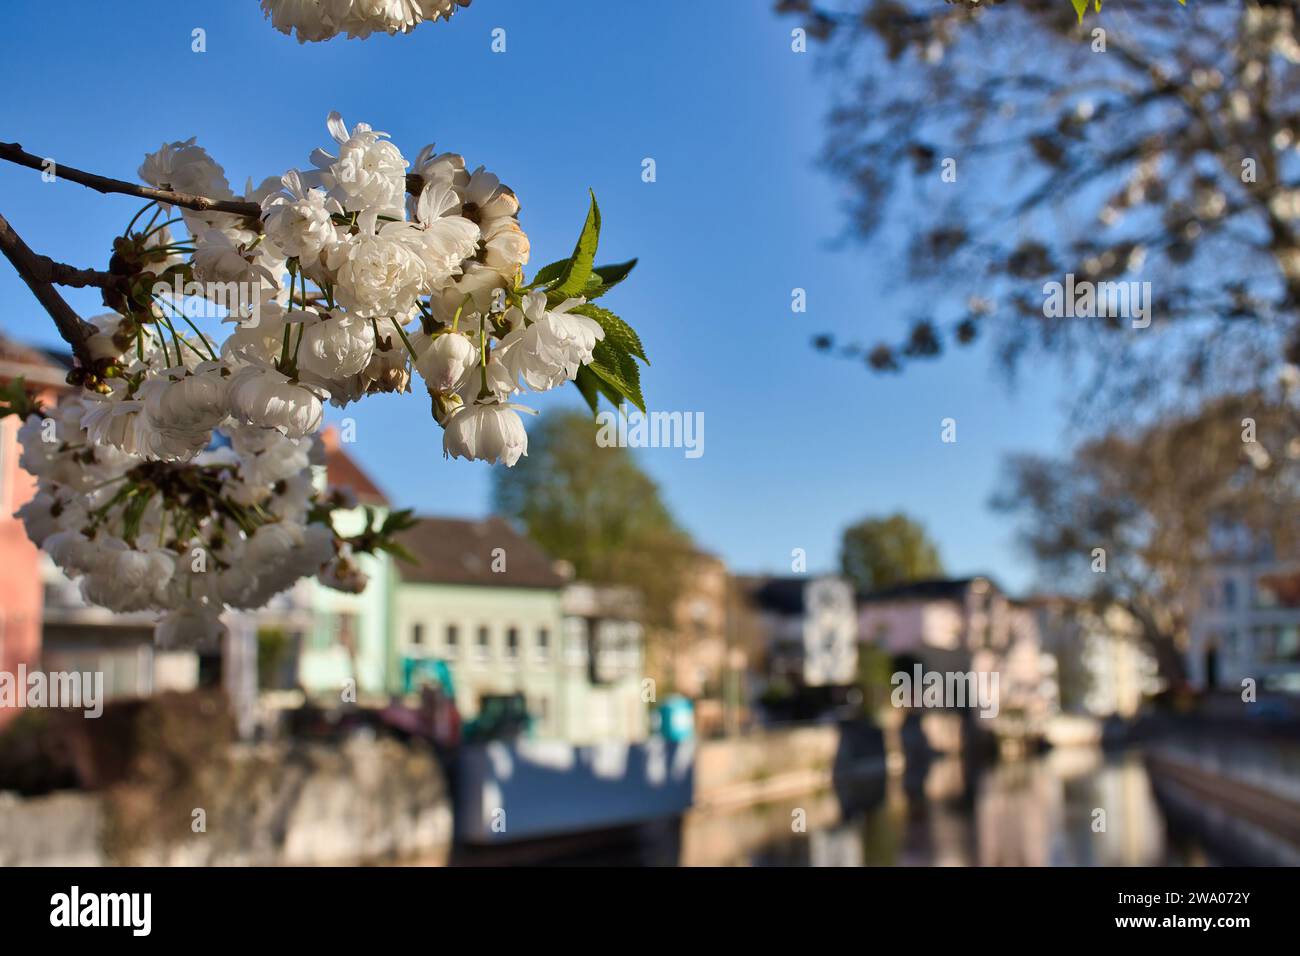 Bad Kreuznach, Allemagne - 25 avril 2021 : fleurs blanches sur une branche d'arbre suspendue au-dessus de la rivière Nahe avec des bâtiments en arrière-plan sur une source chaude Banque D'Images